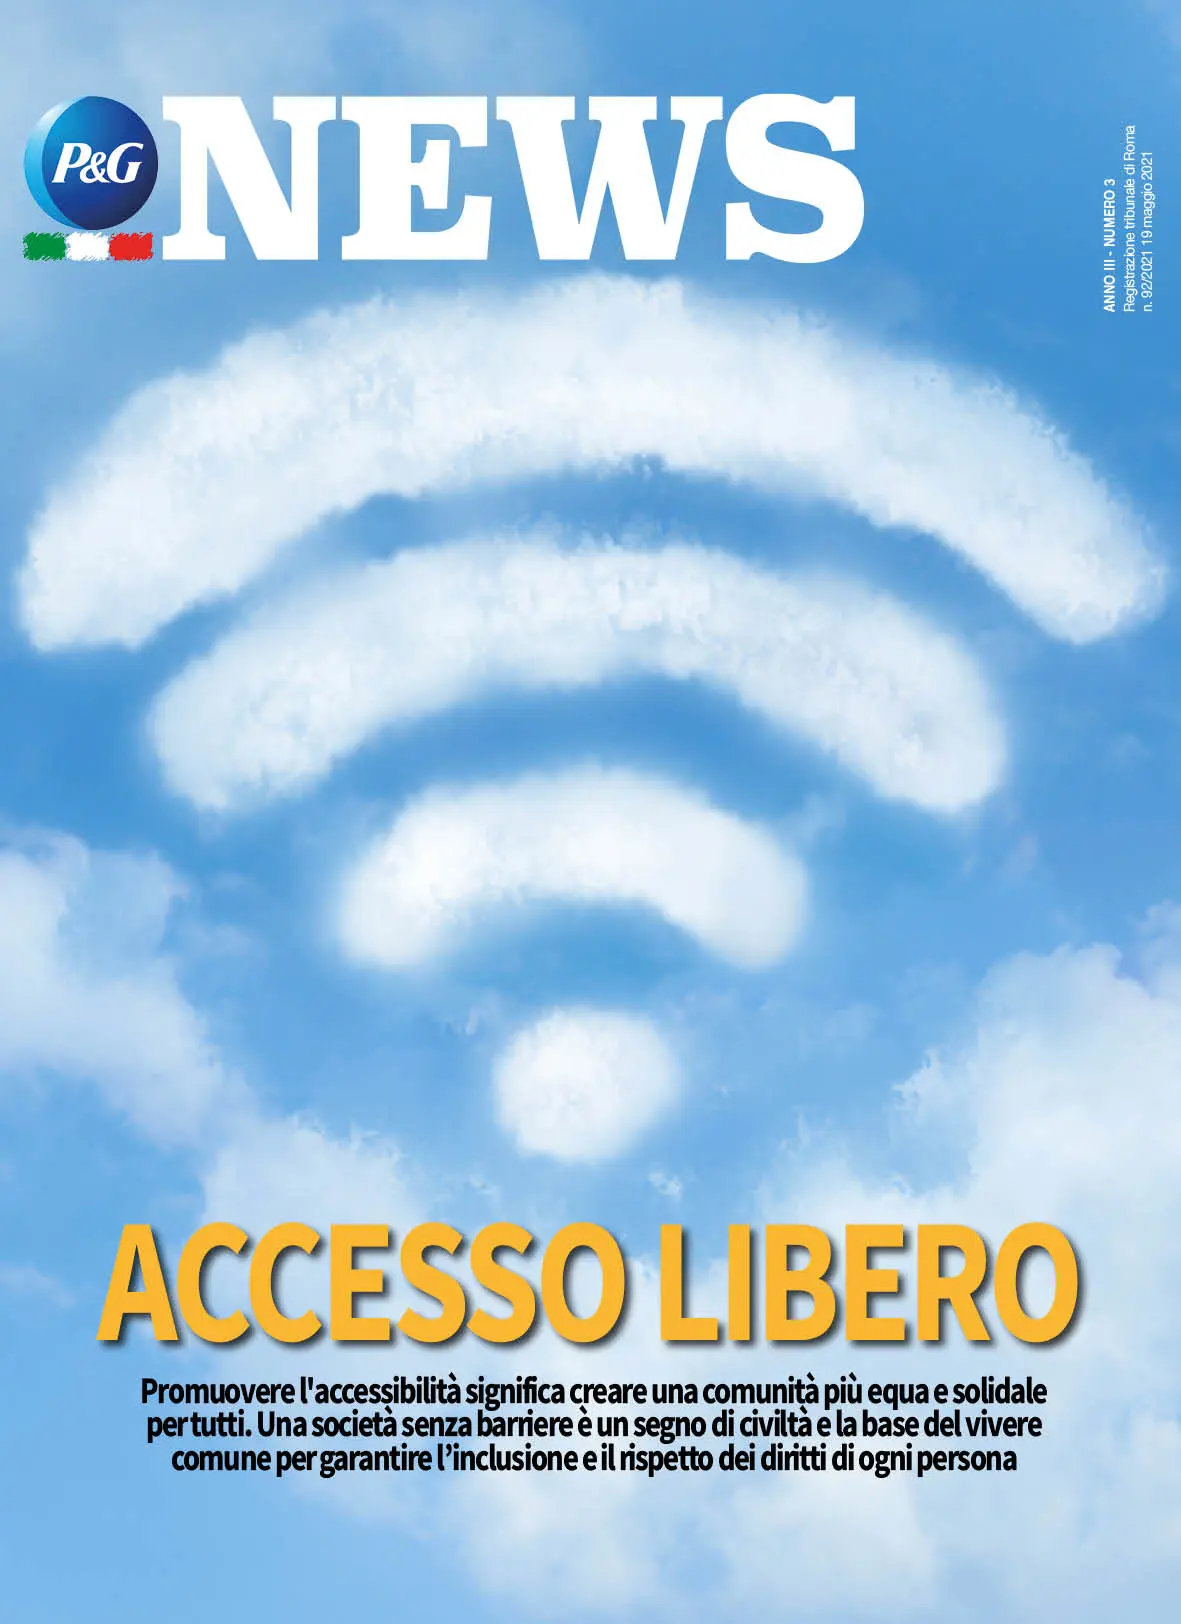 Copertina Magazine Anno 3 numero 2. Titolo "Accesso libero".